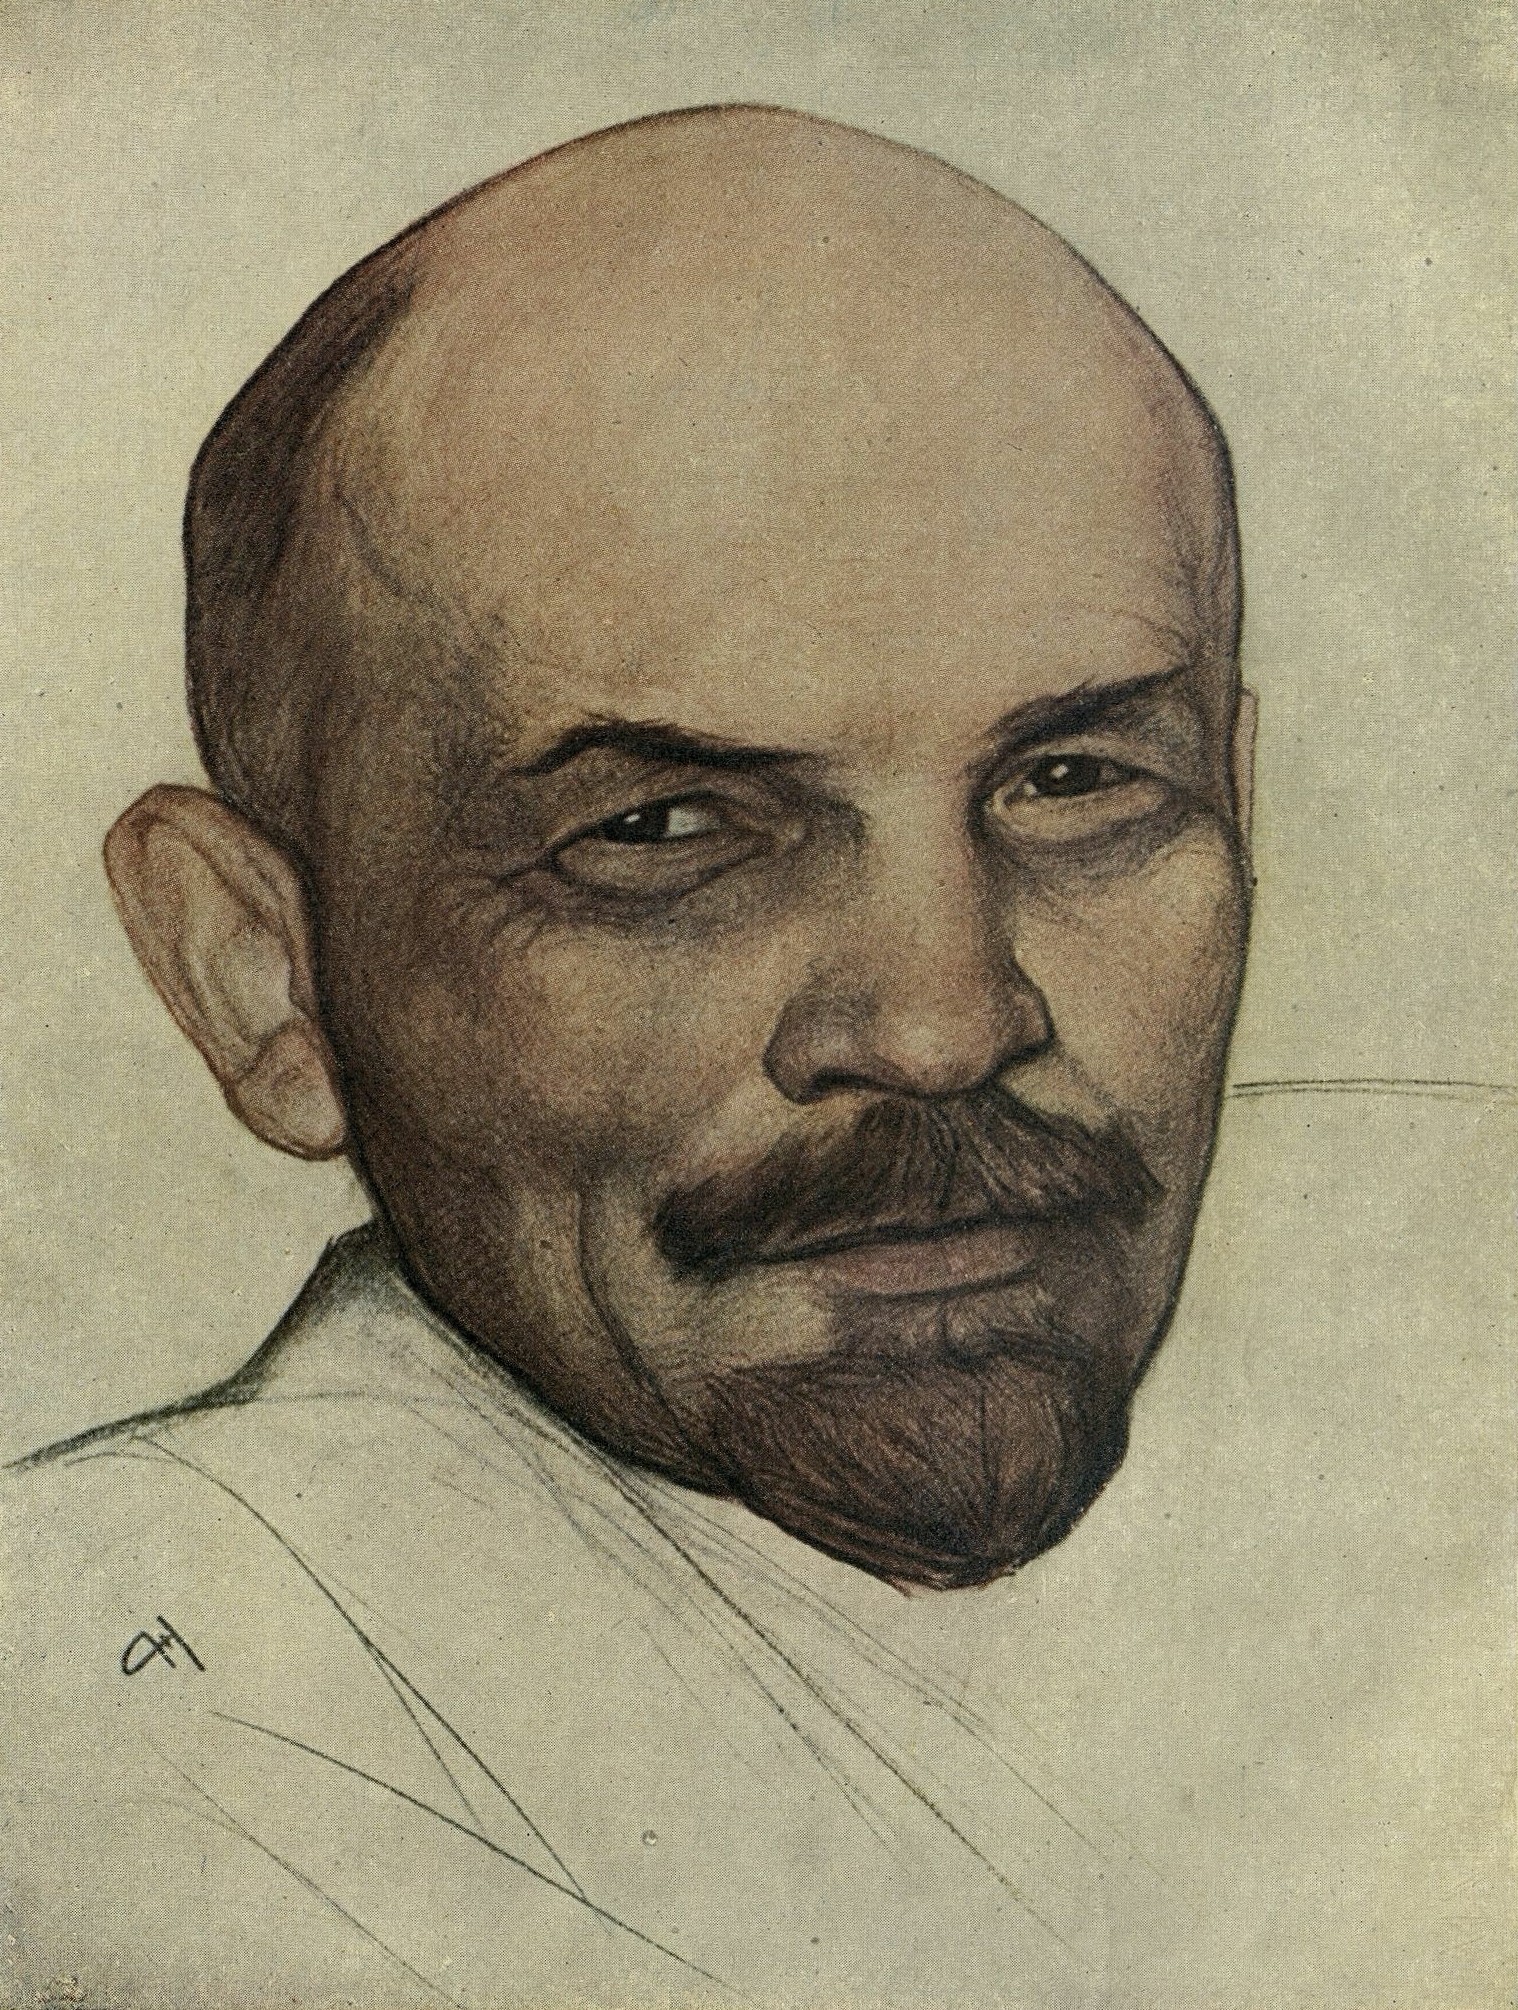 Н. Андреев. Портрет В. И. Ленина. N. Andréyev. Portrait de V. Lénine.